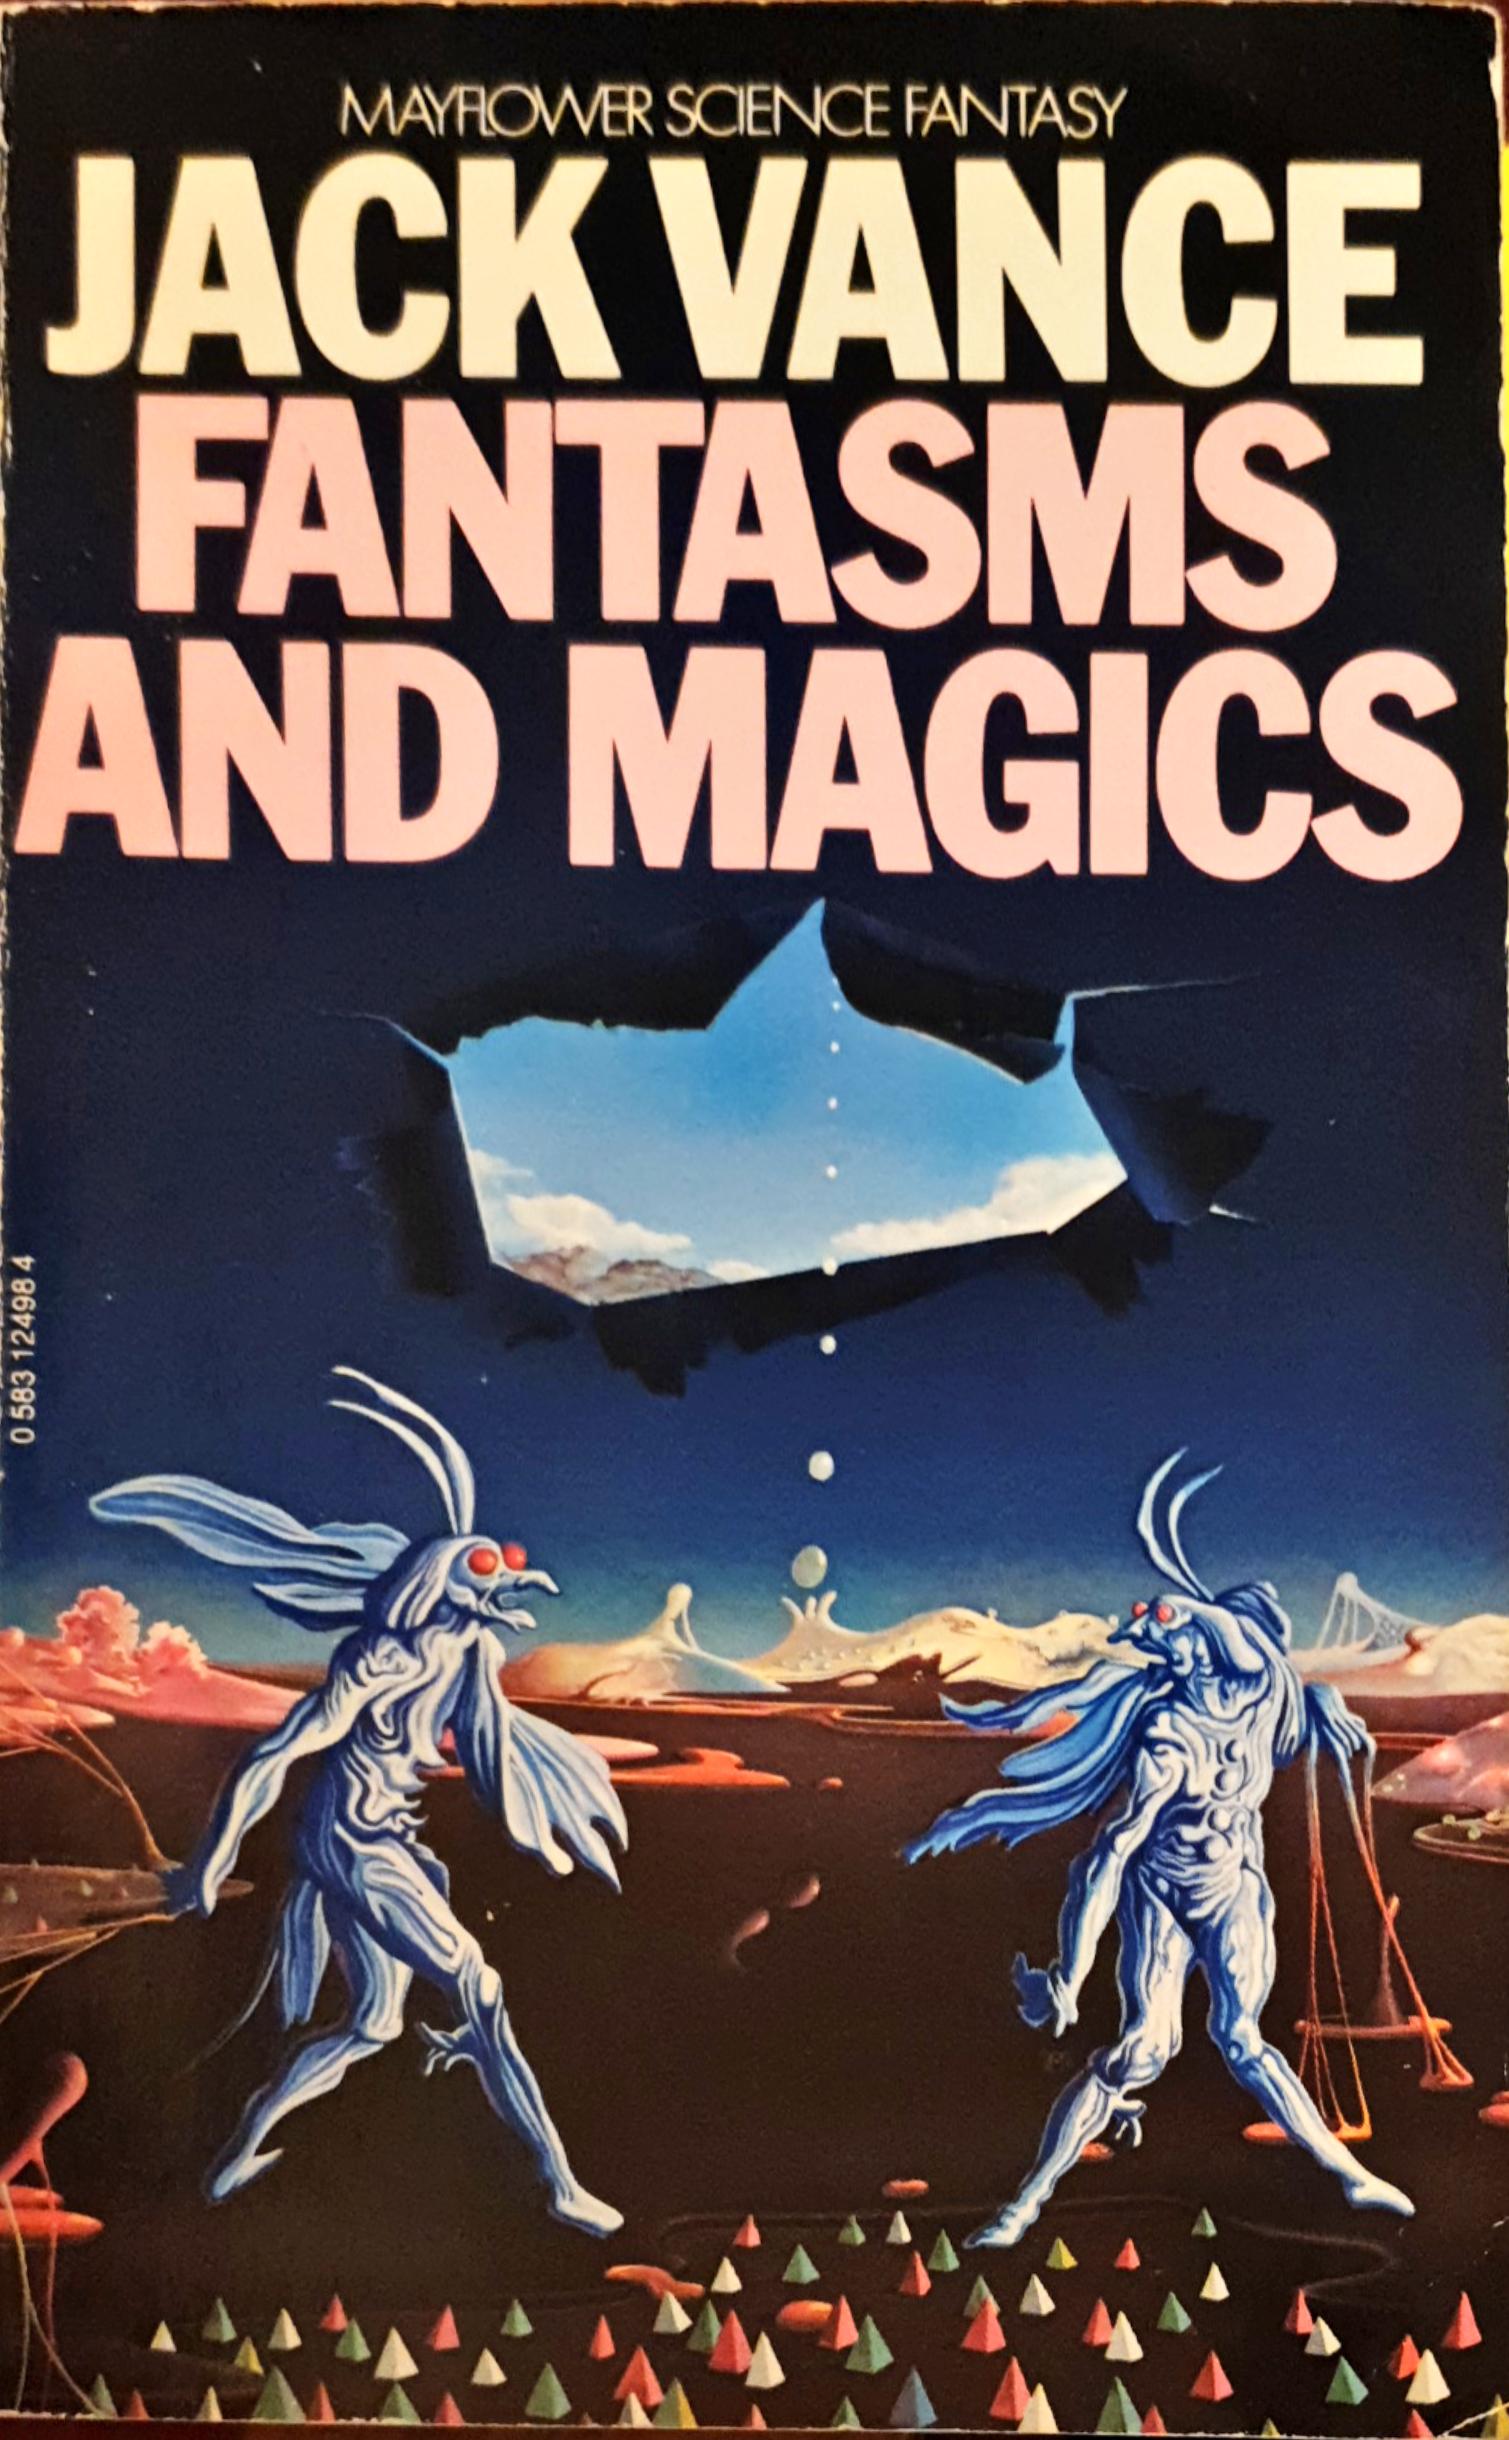 Fantasms and Magics